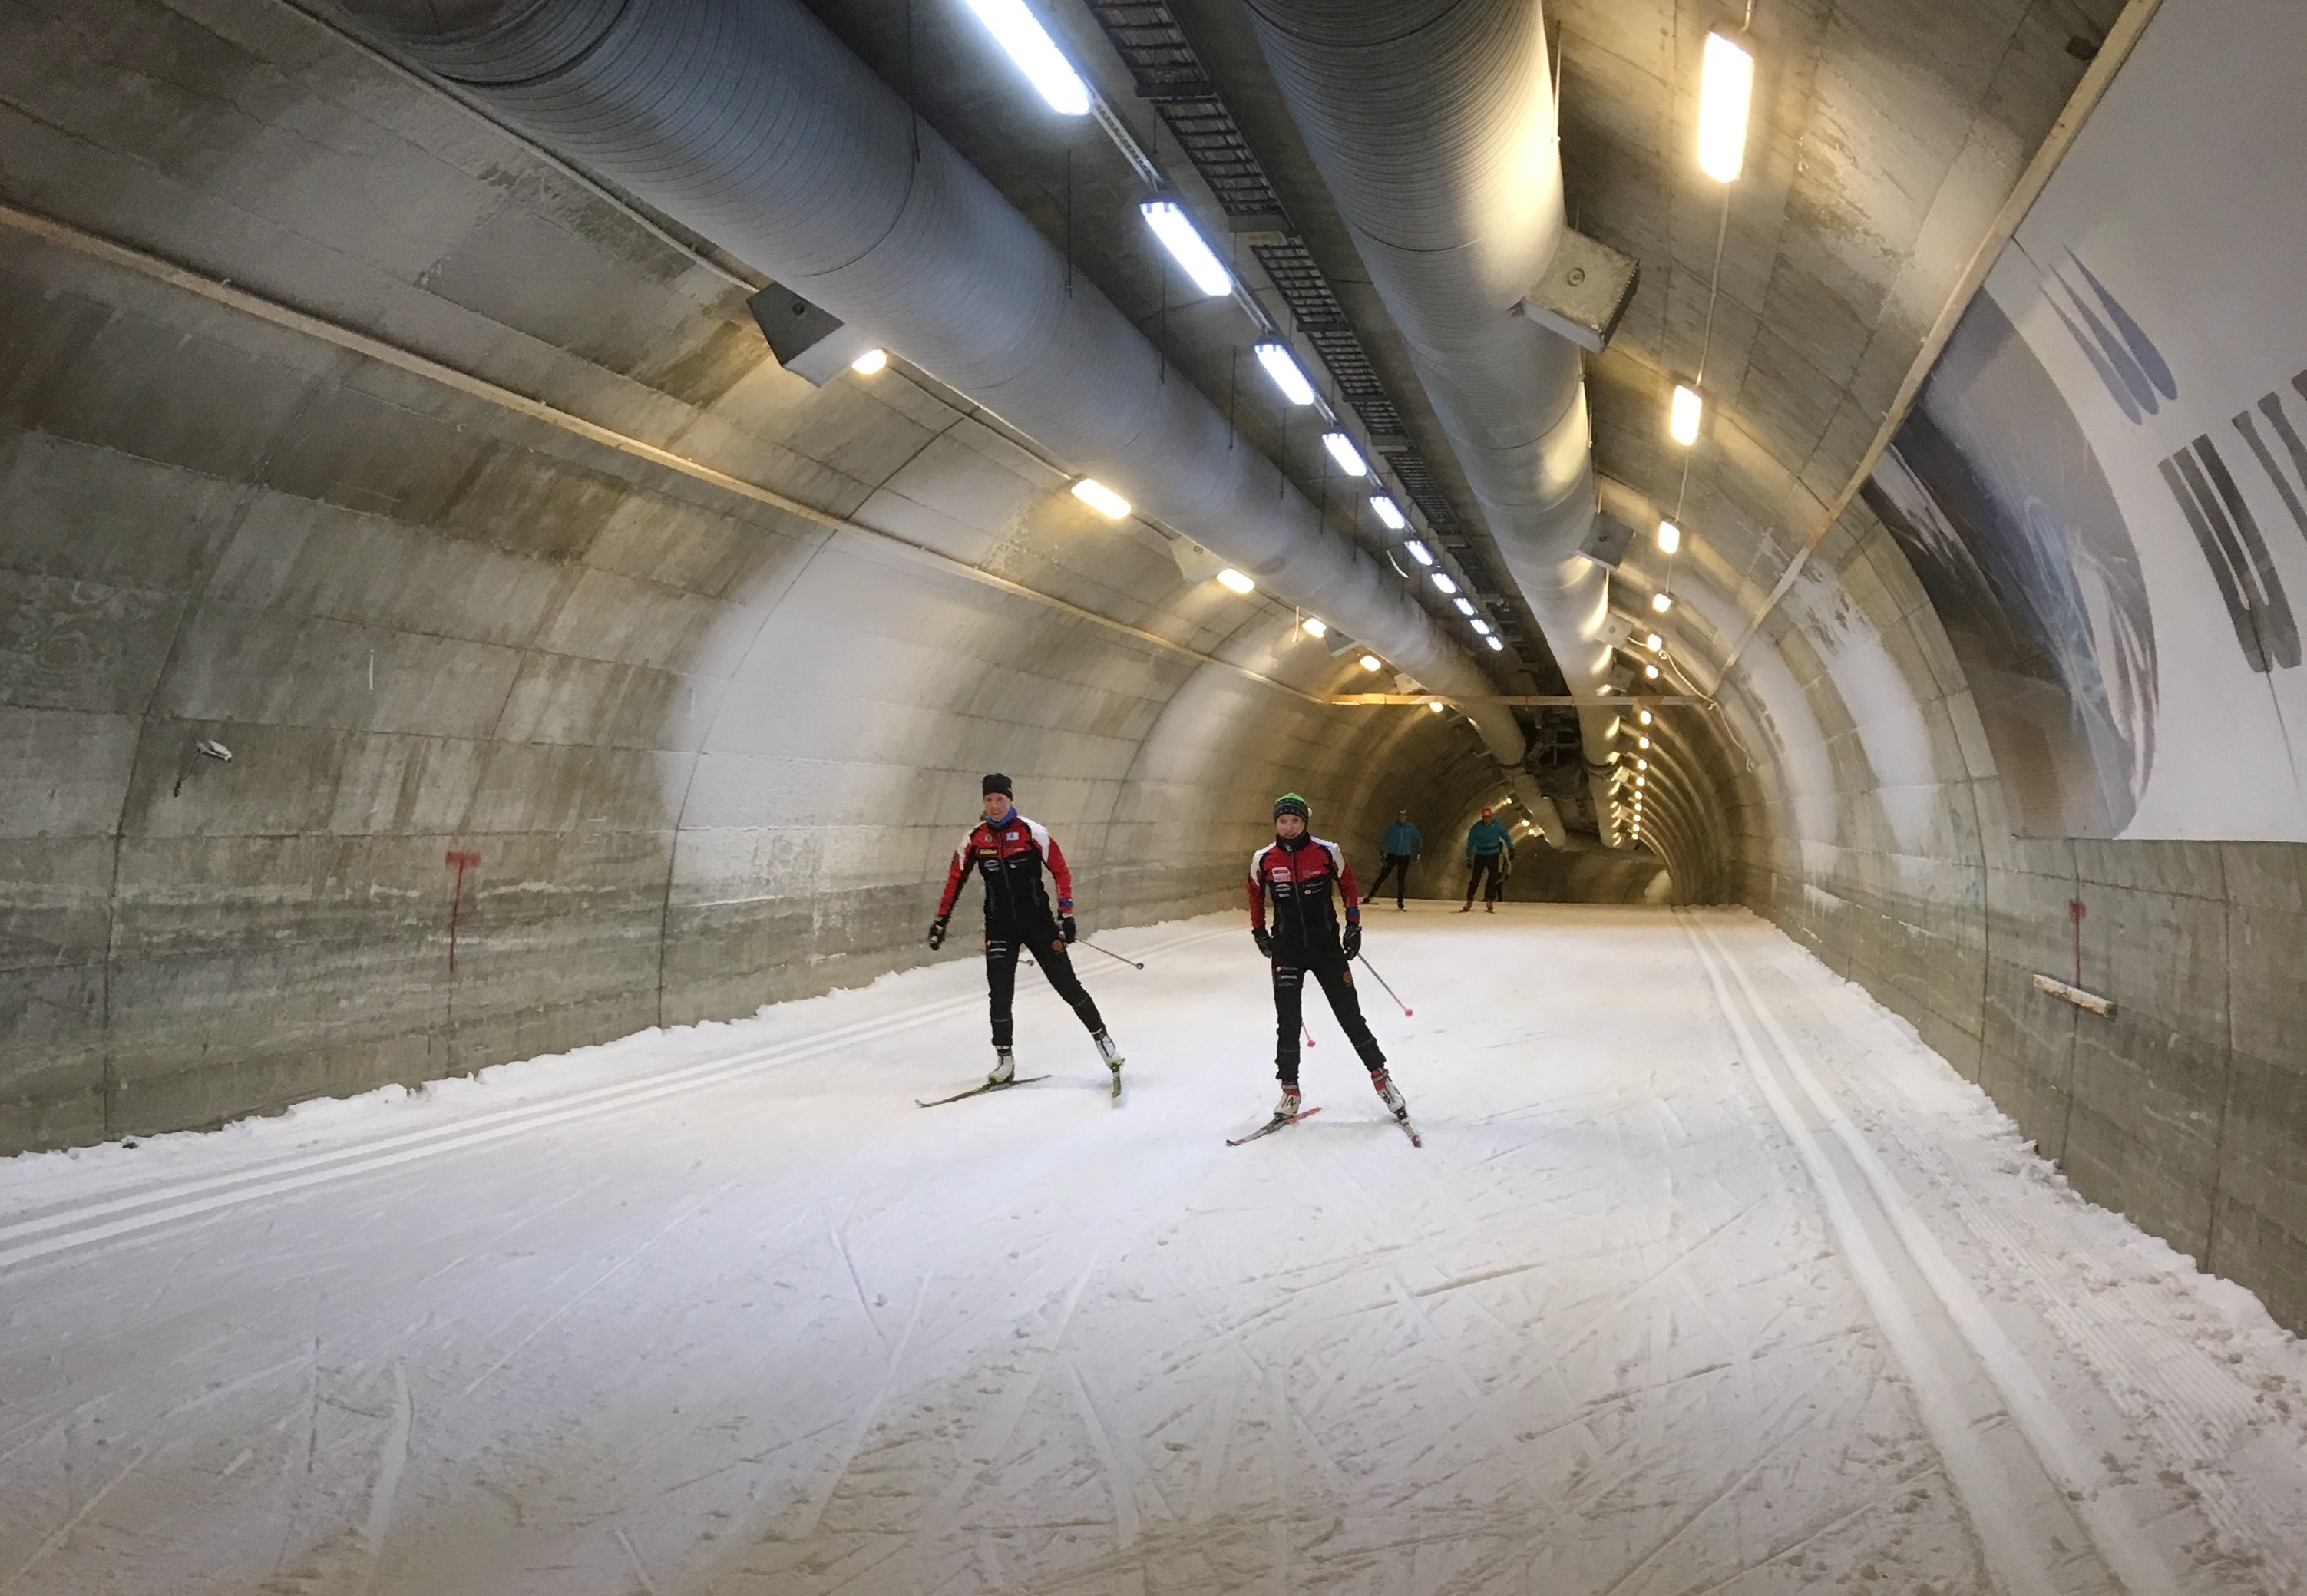 Krista Niiranen (left) and Finnish teammate Petra Torvinen training in the Vuokatti ski tunnel. (Courtesy photo)